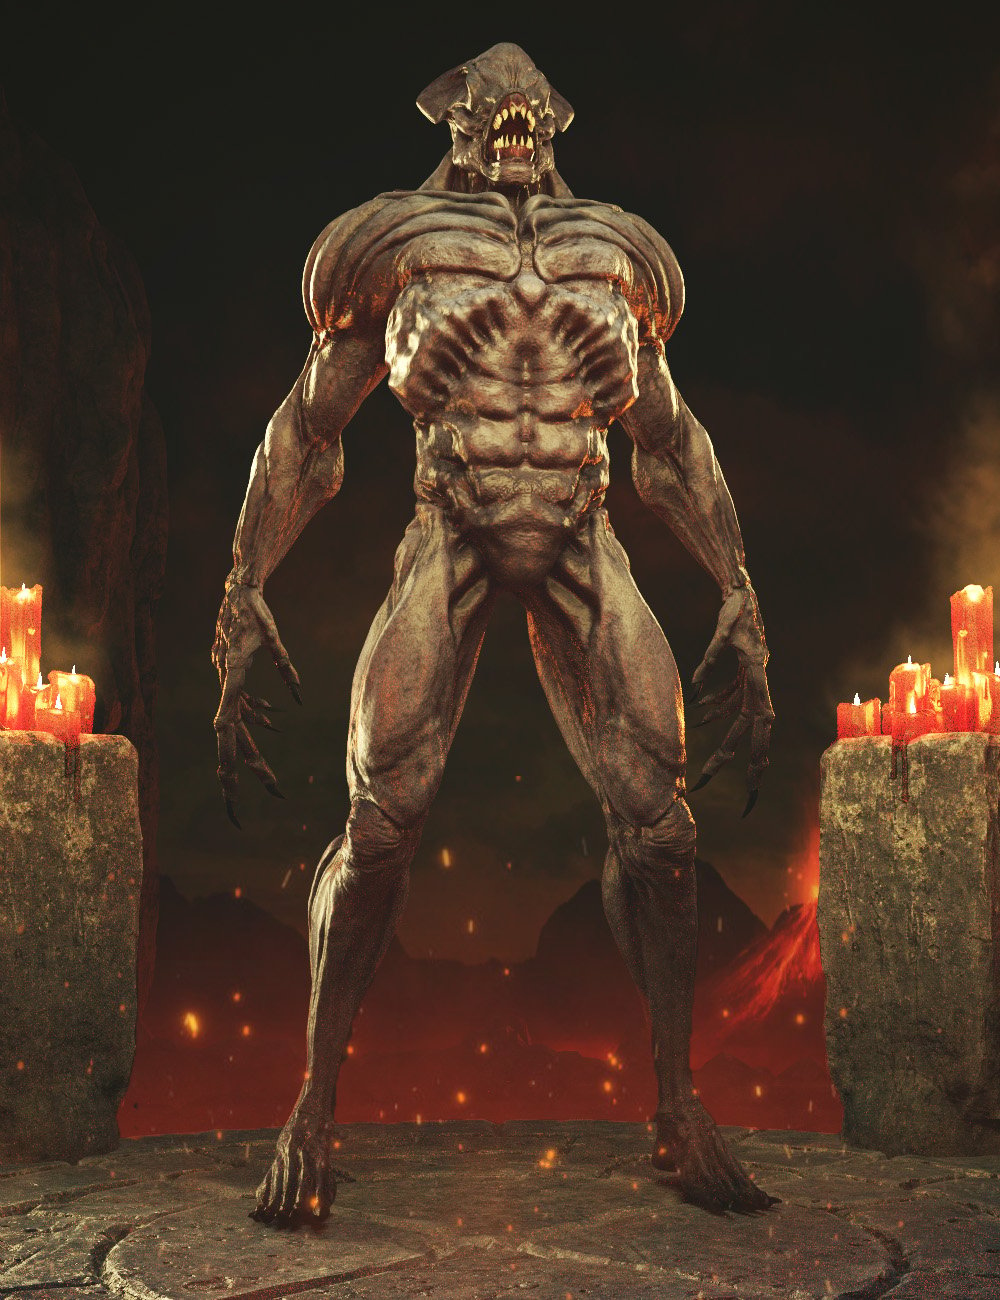 Doom Demon HD for Genesis 8 Male by: Josh Crockett, 3D Models by Daz 3D